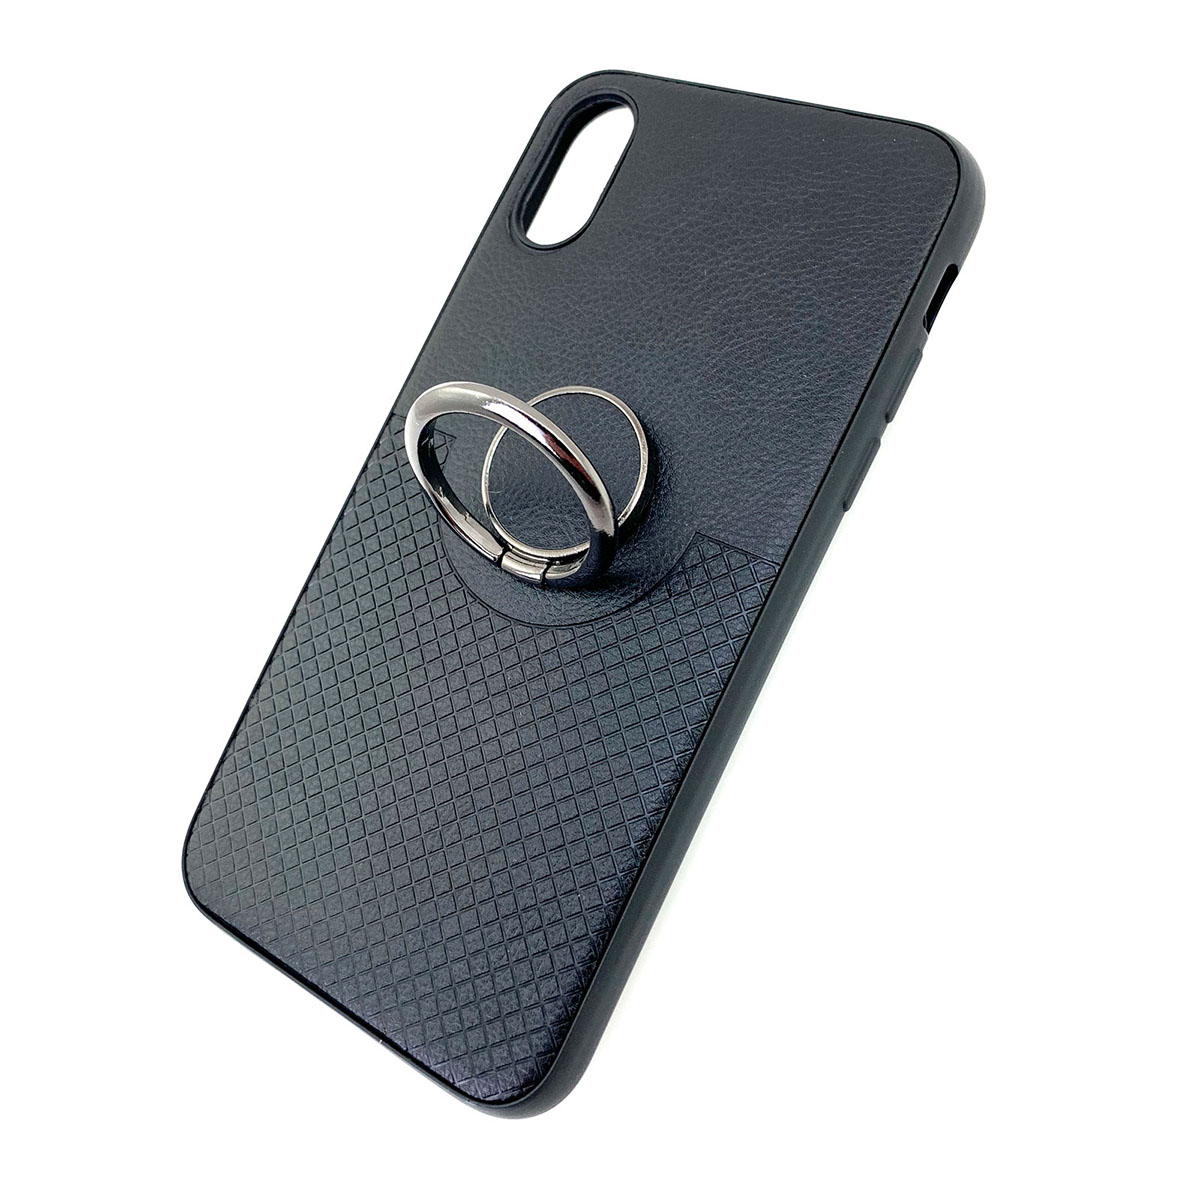 Чехол накладка для APPLE iPhone X, XS, силикон, под кожу, кольцо держатель, цвет черный.